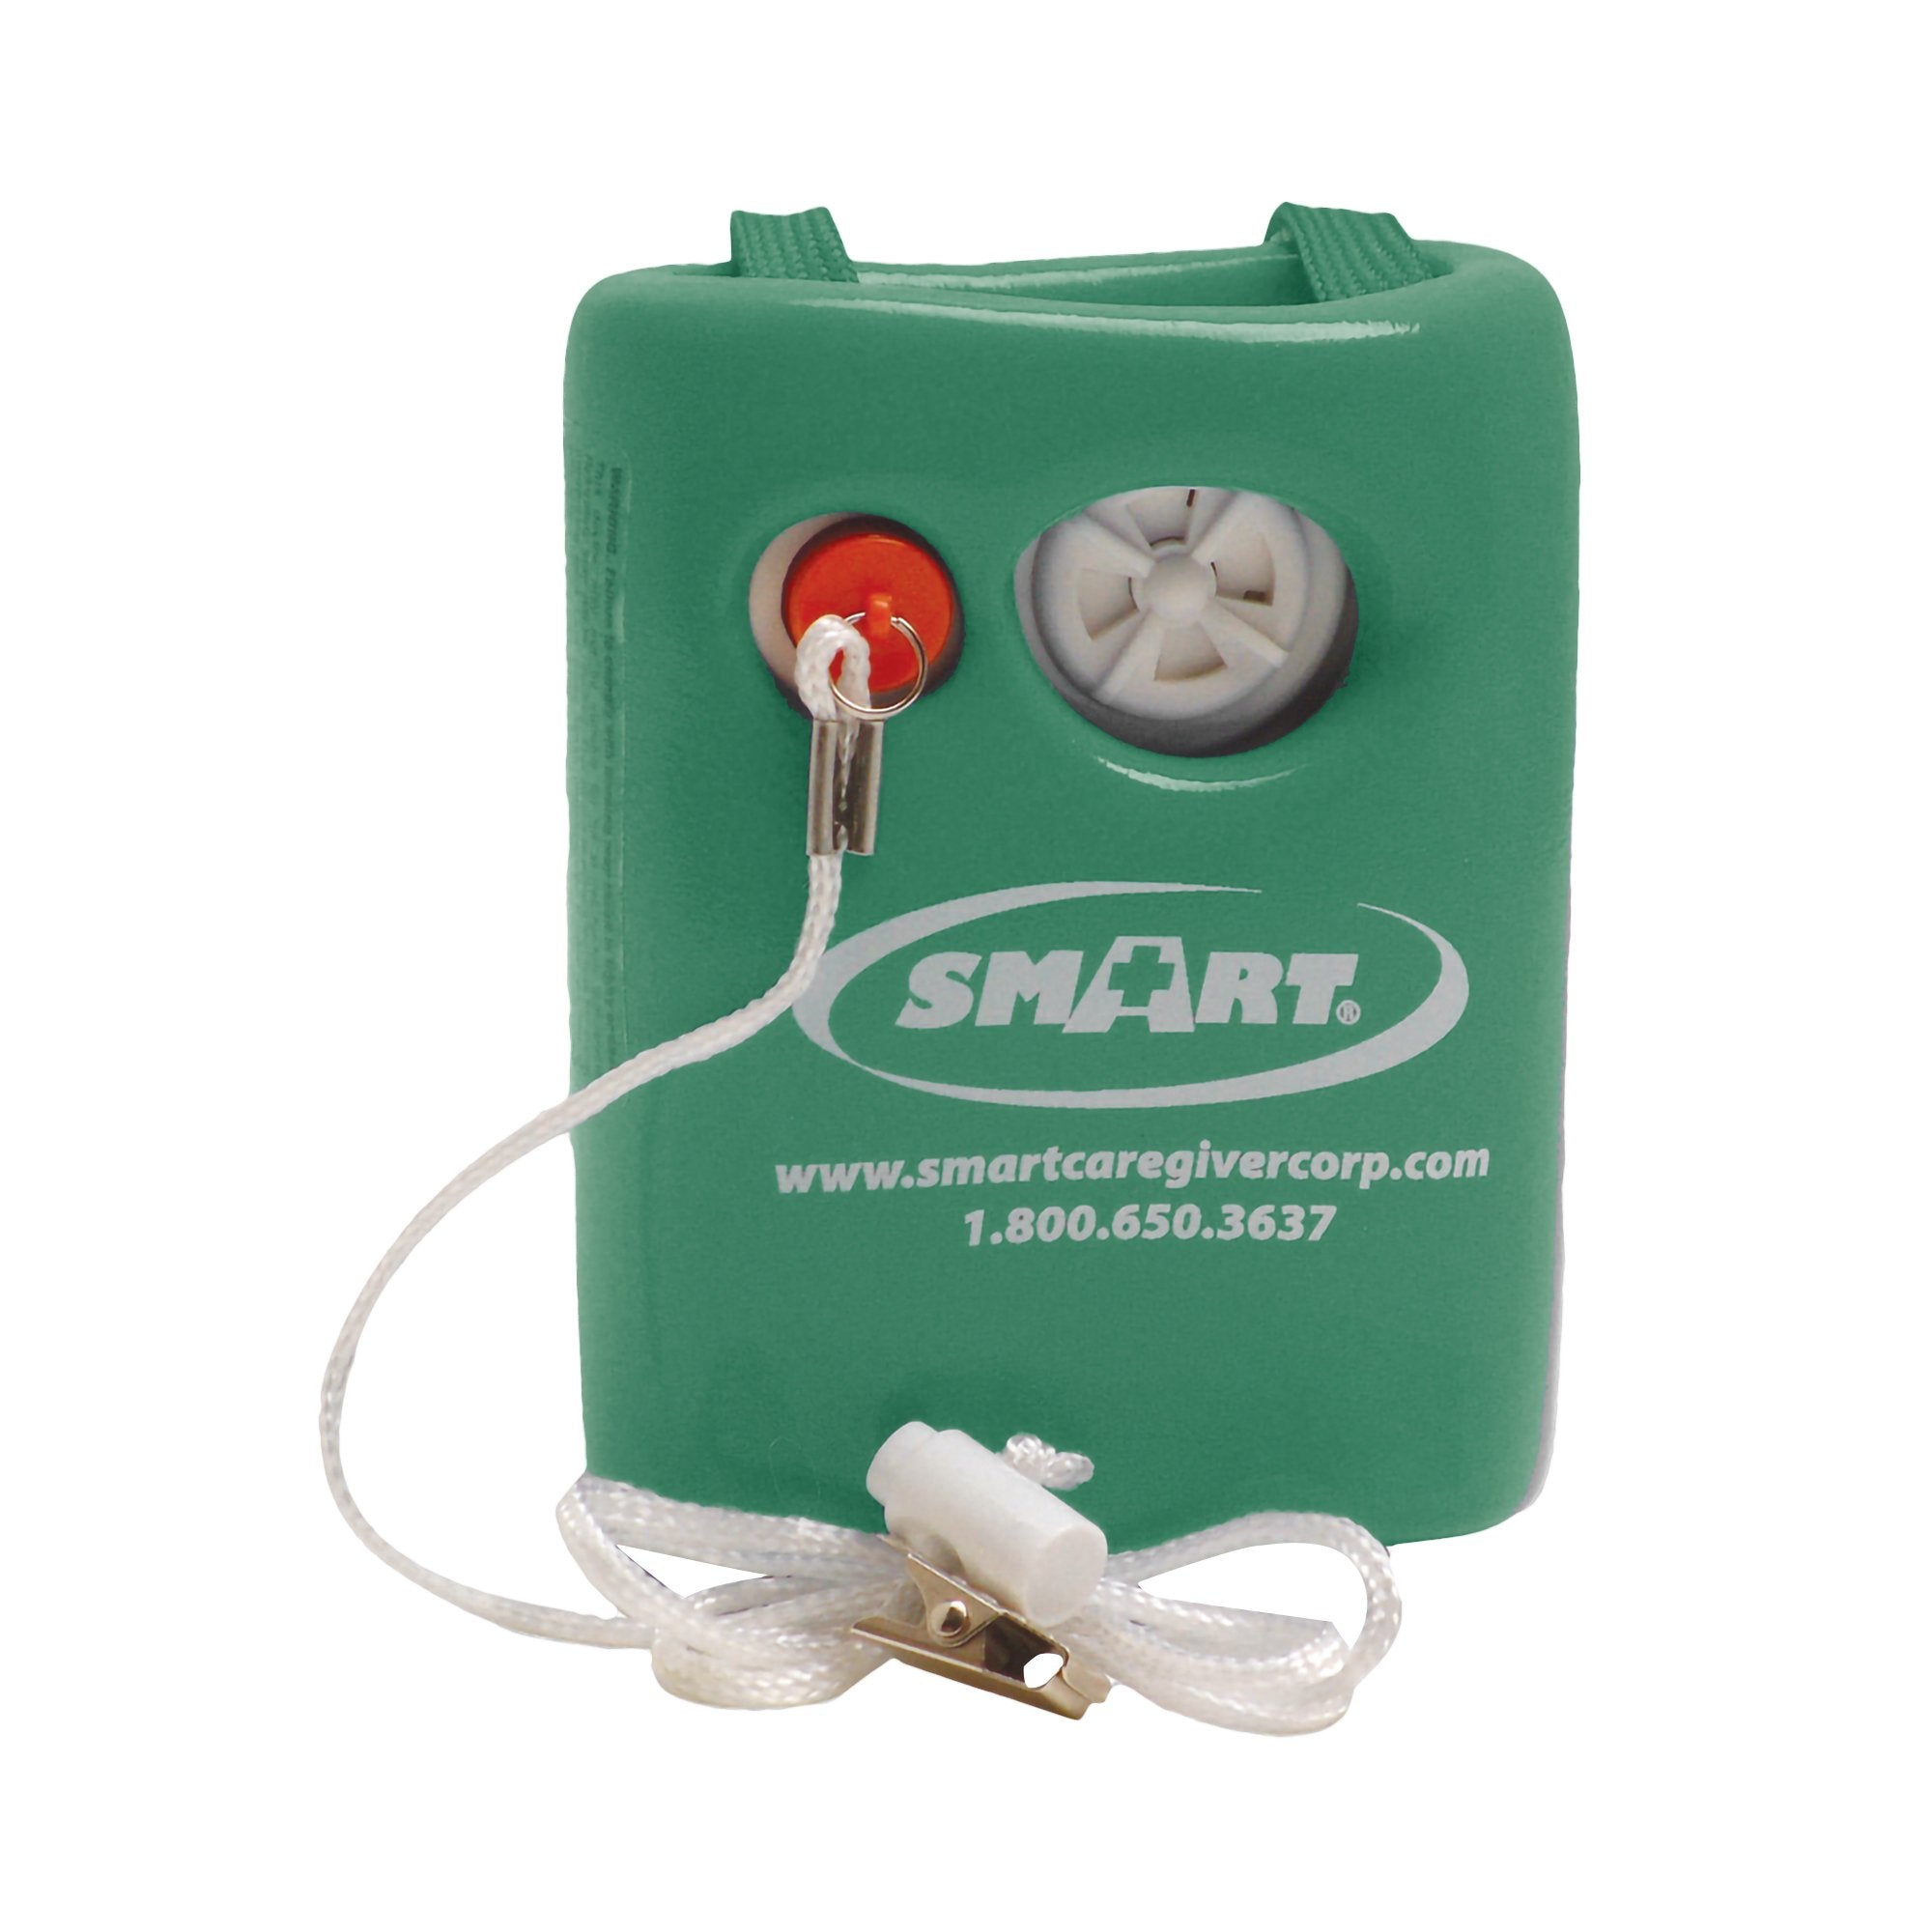 Alarm System Smart Caregiver™